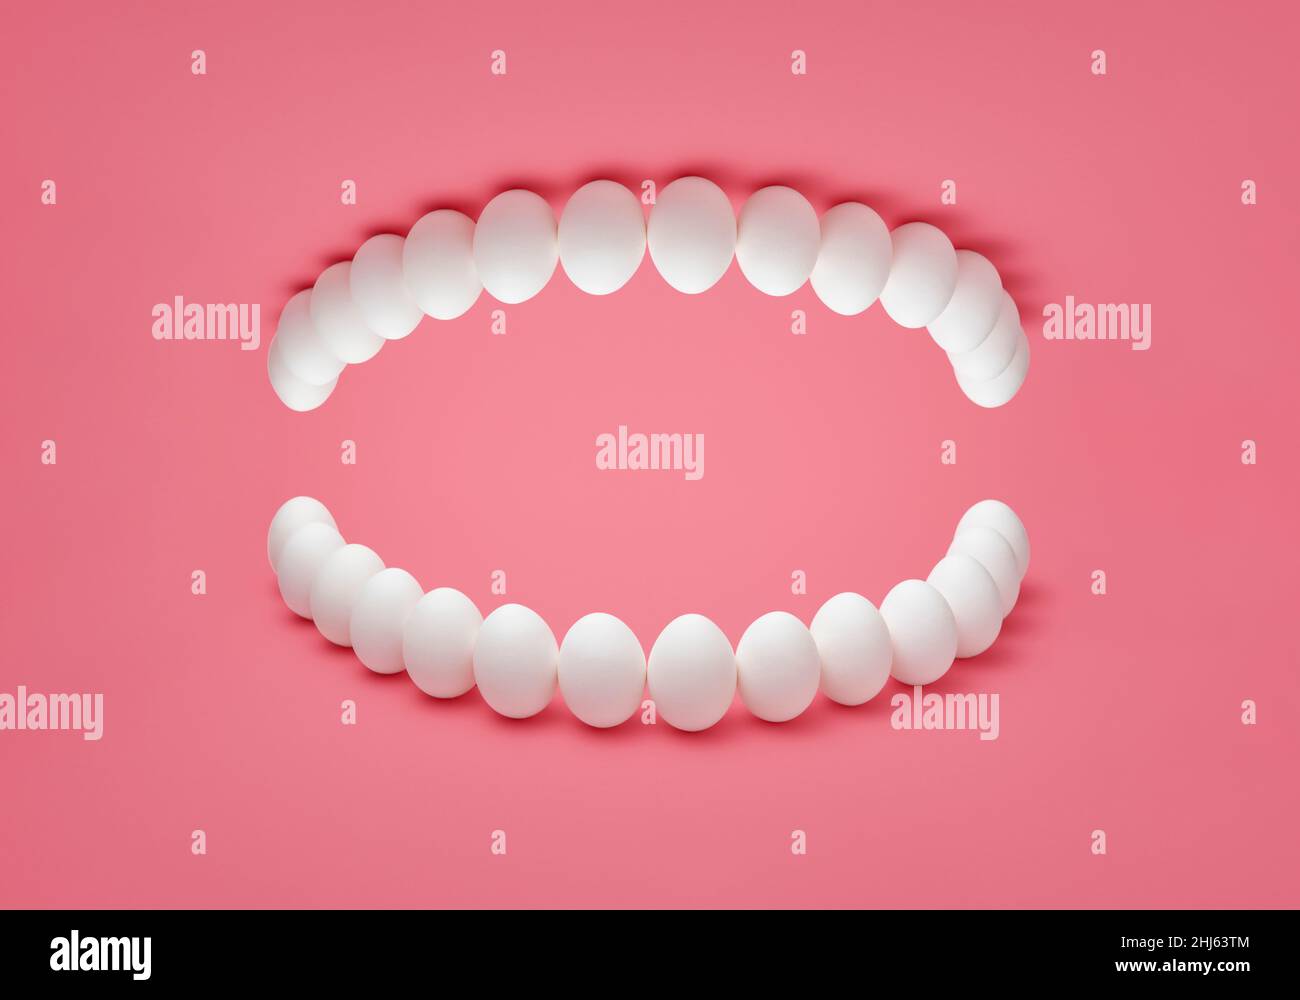 Concept fotografico con uova di pollo disposte su sfondo rosa come la dentiera umana. Replica dei denti umani a base di uova di pollo. Foto Stock